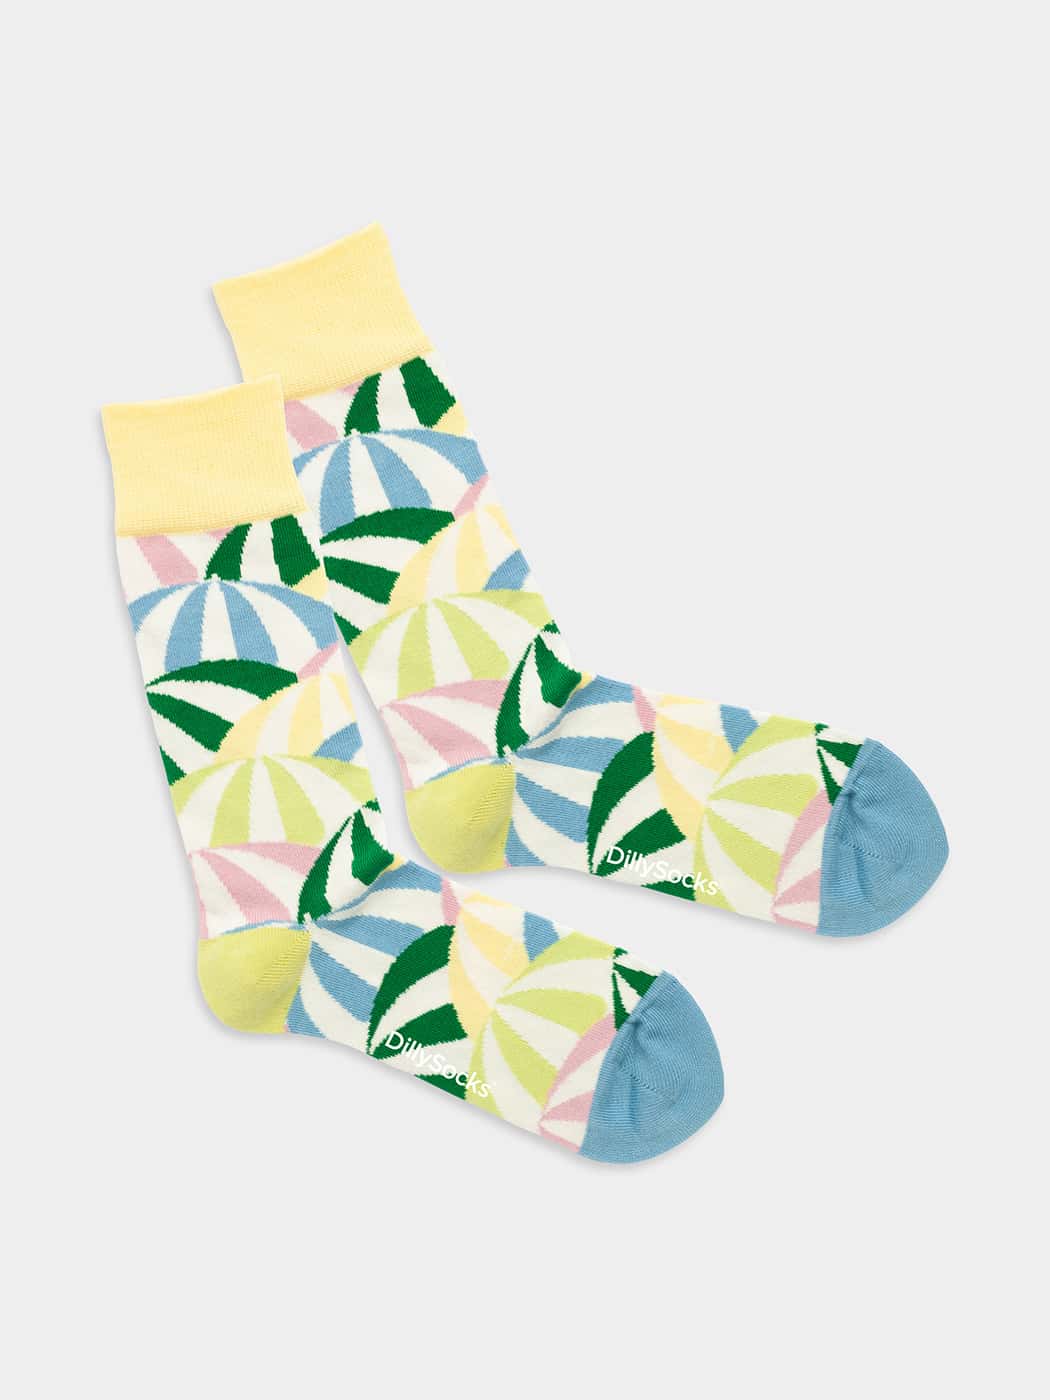 - Socken in Bunt  mit Streifen Motiv/Muster von DillySocks